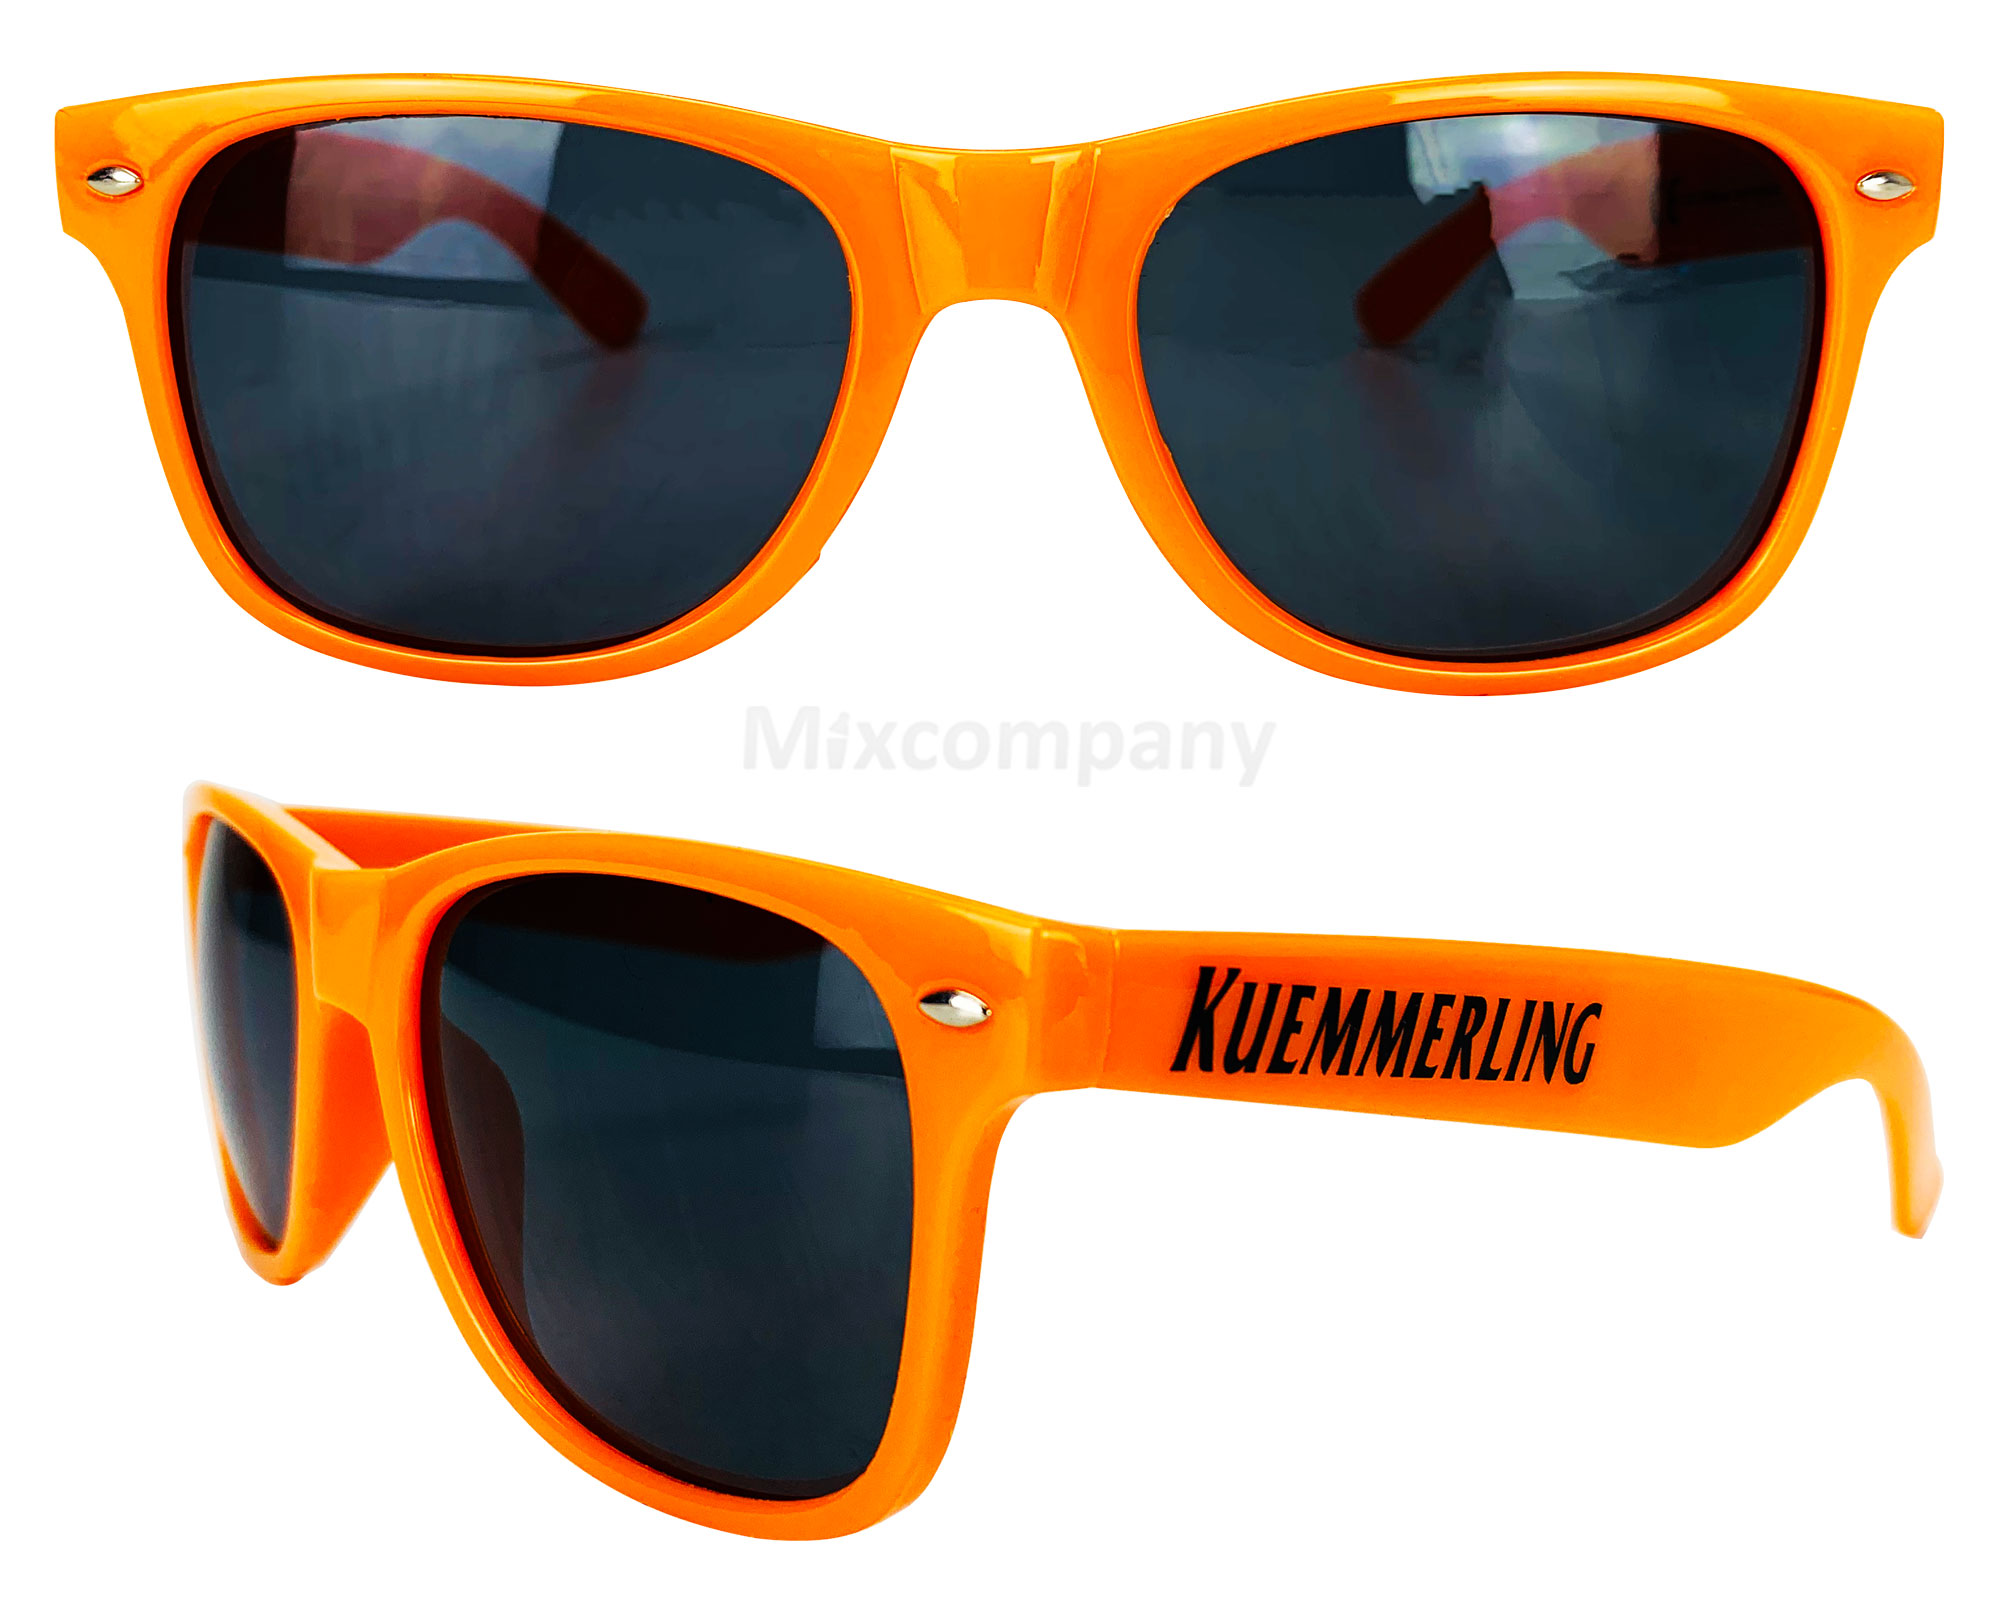 Kuemmerling Nerd Sonnenbrille orange UV400 Unisex Retro Vintage Style Party Festival Bar